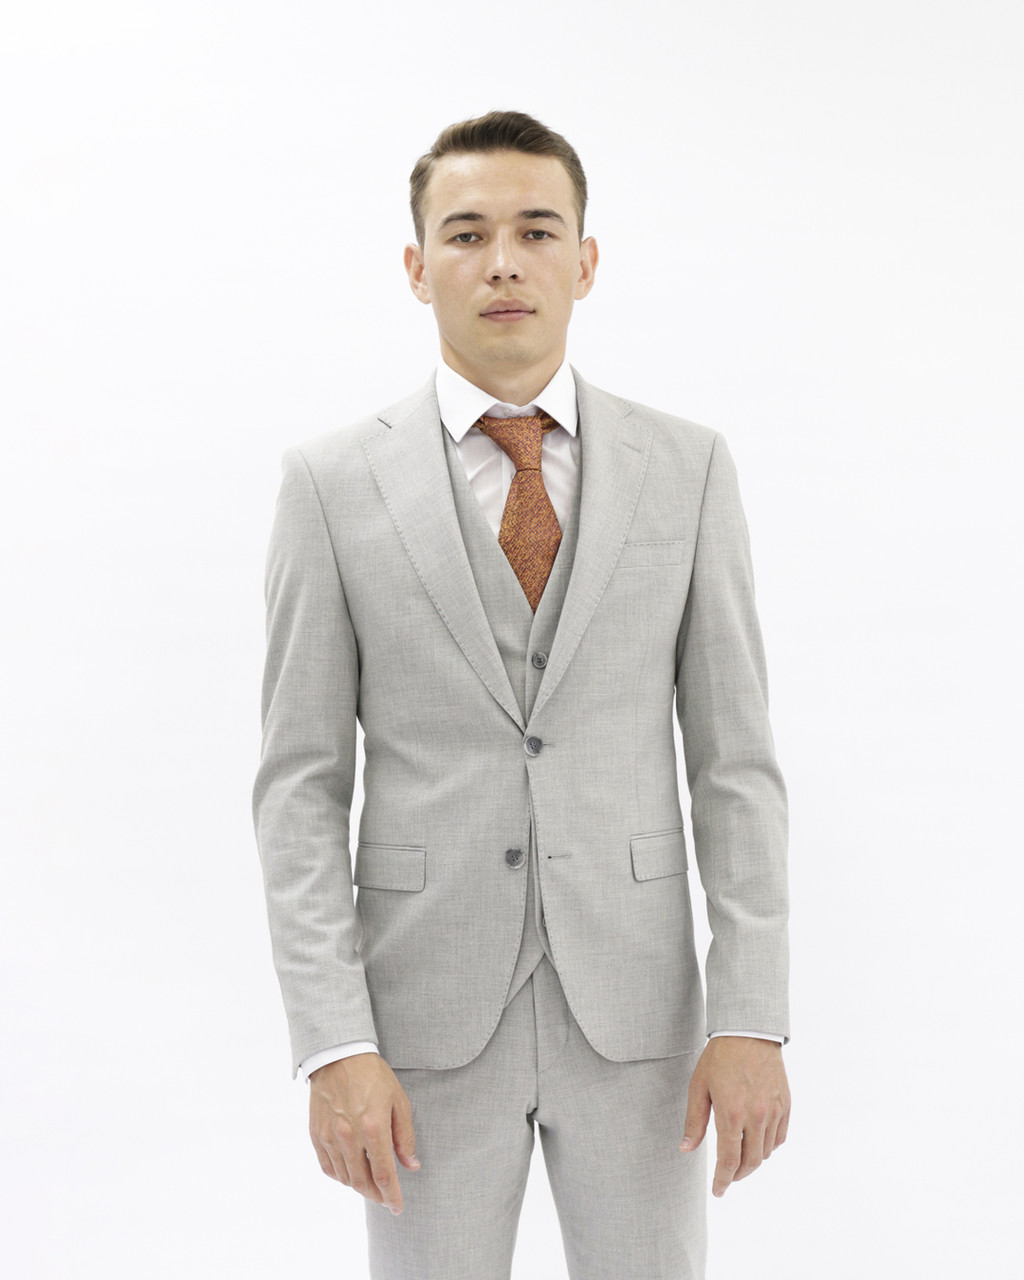 Мужской деловой костюм «UM&H 56392747» серый, фото 1